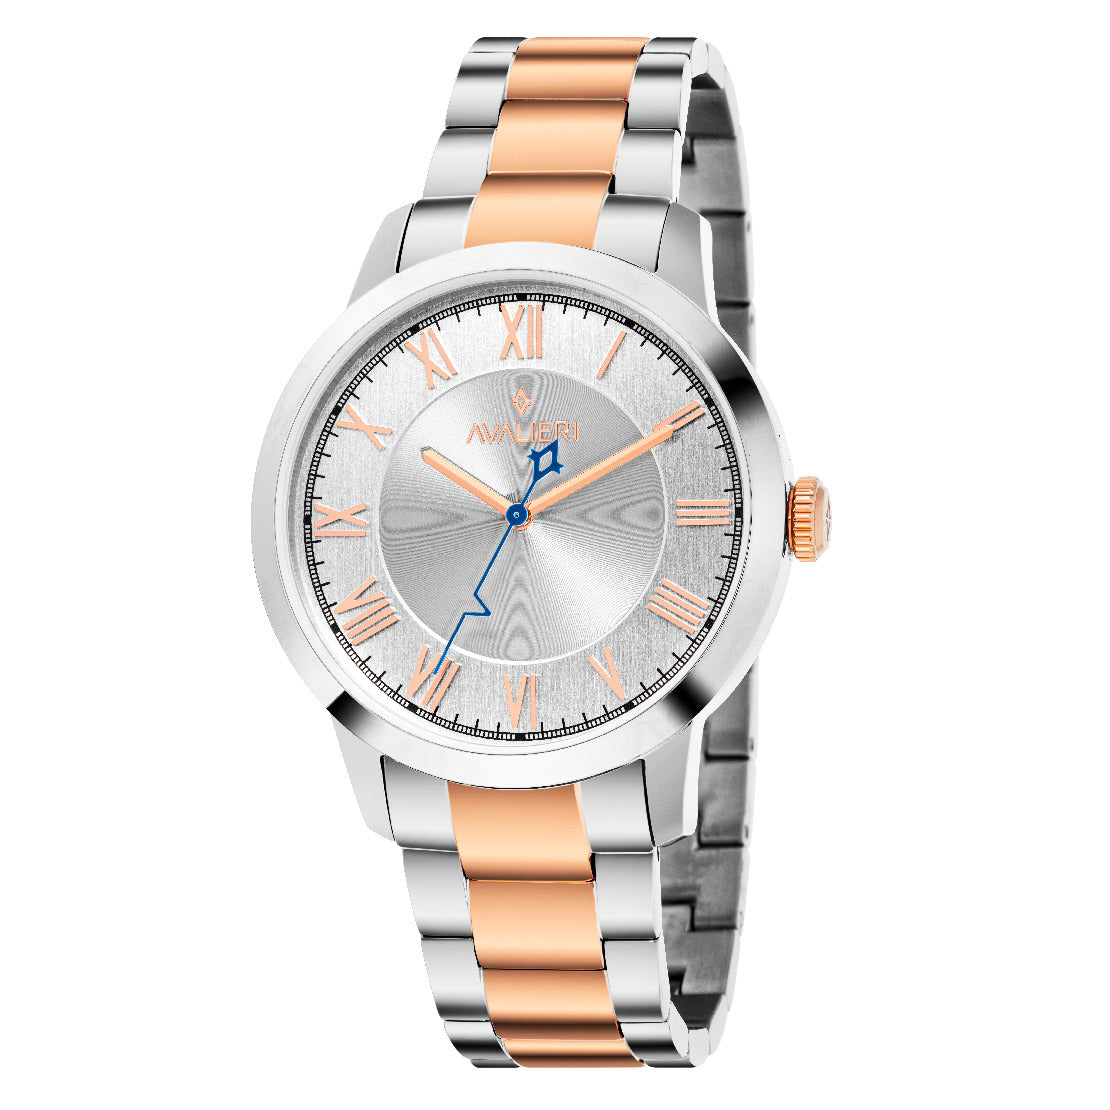 Avalieri Men's Quartz Watch, White Dial - AV-2552B